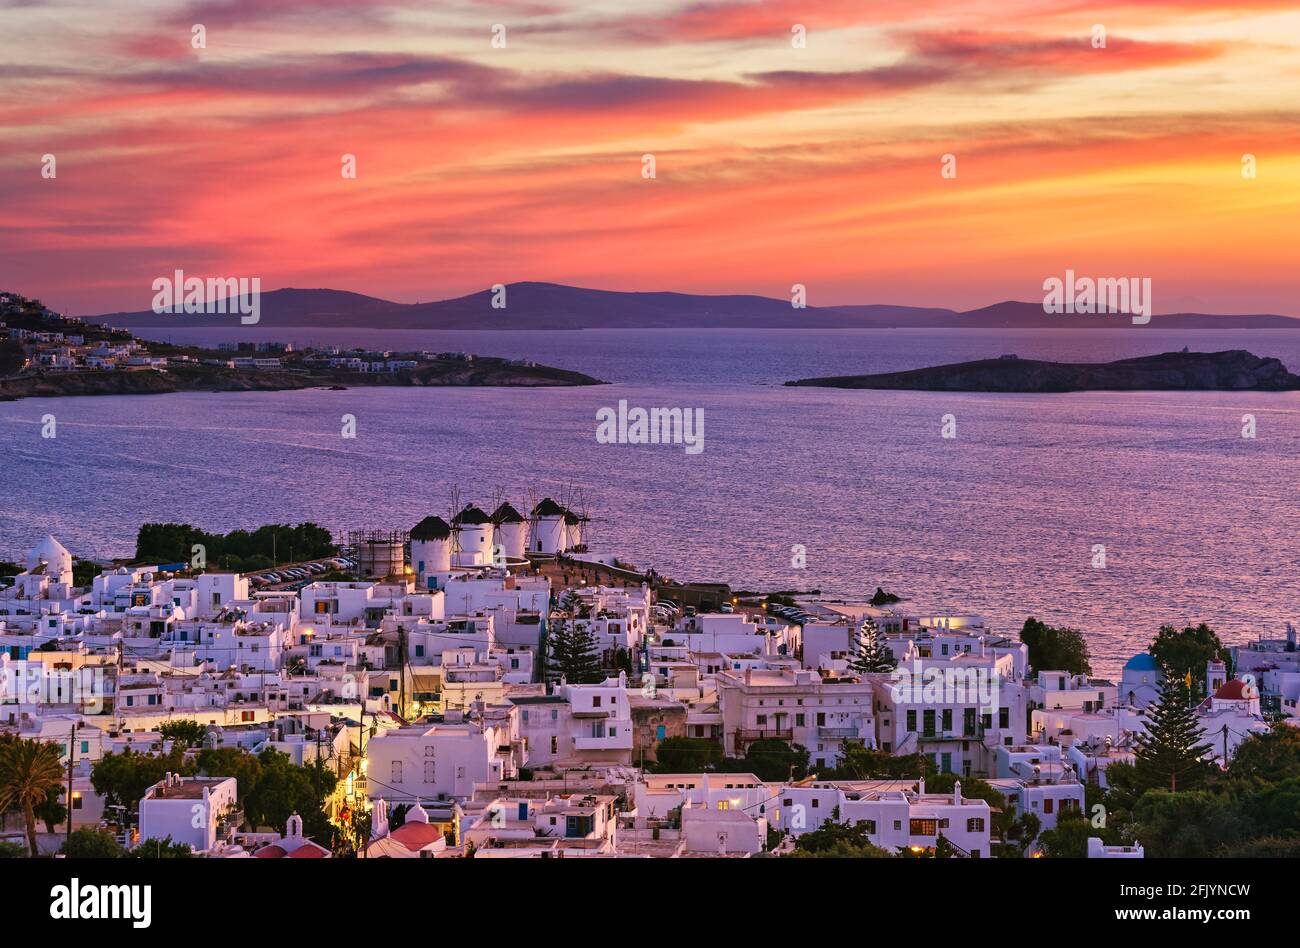 Wunderschöne Sonnenuntergangsansicht der berühmten traditionellen weißen Windmühlen auf dem Hügel, Mykonos, Griechenland. Weiß getünchtes Haus, farbenprächtiger Sonnenuntergang, Sommer, Stadtlicht an Stockfoto